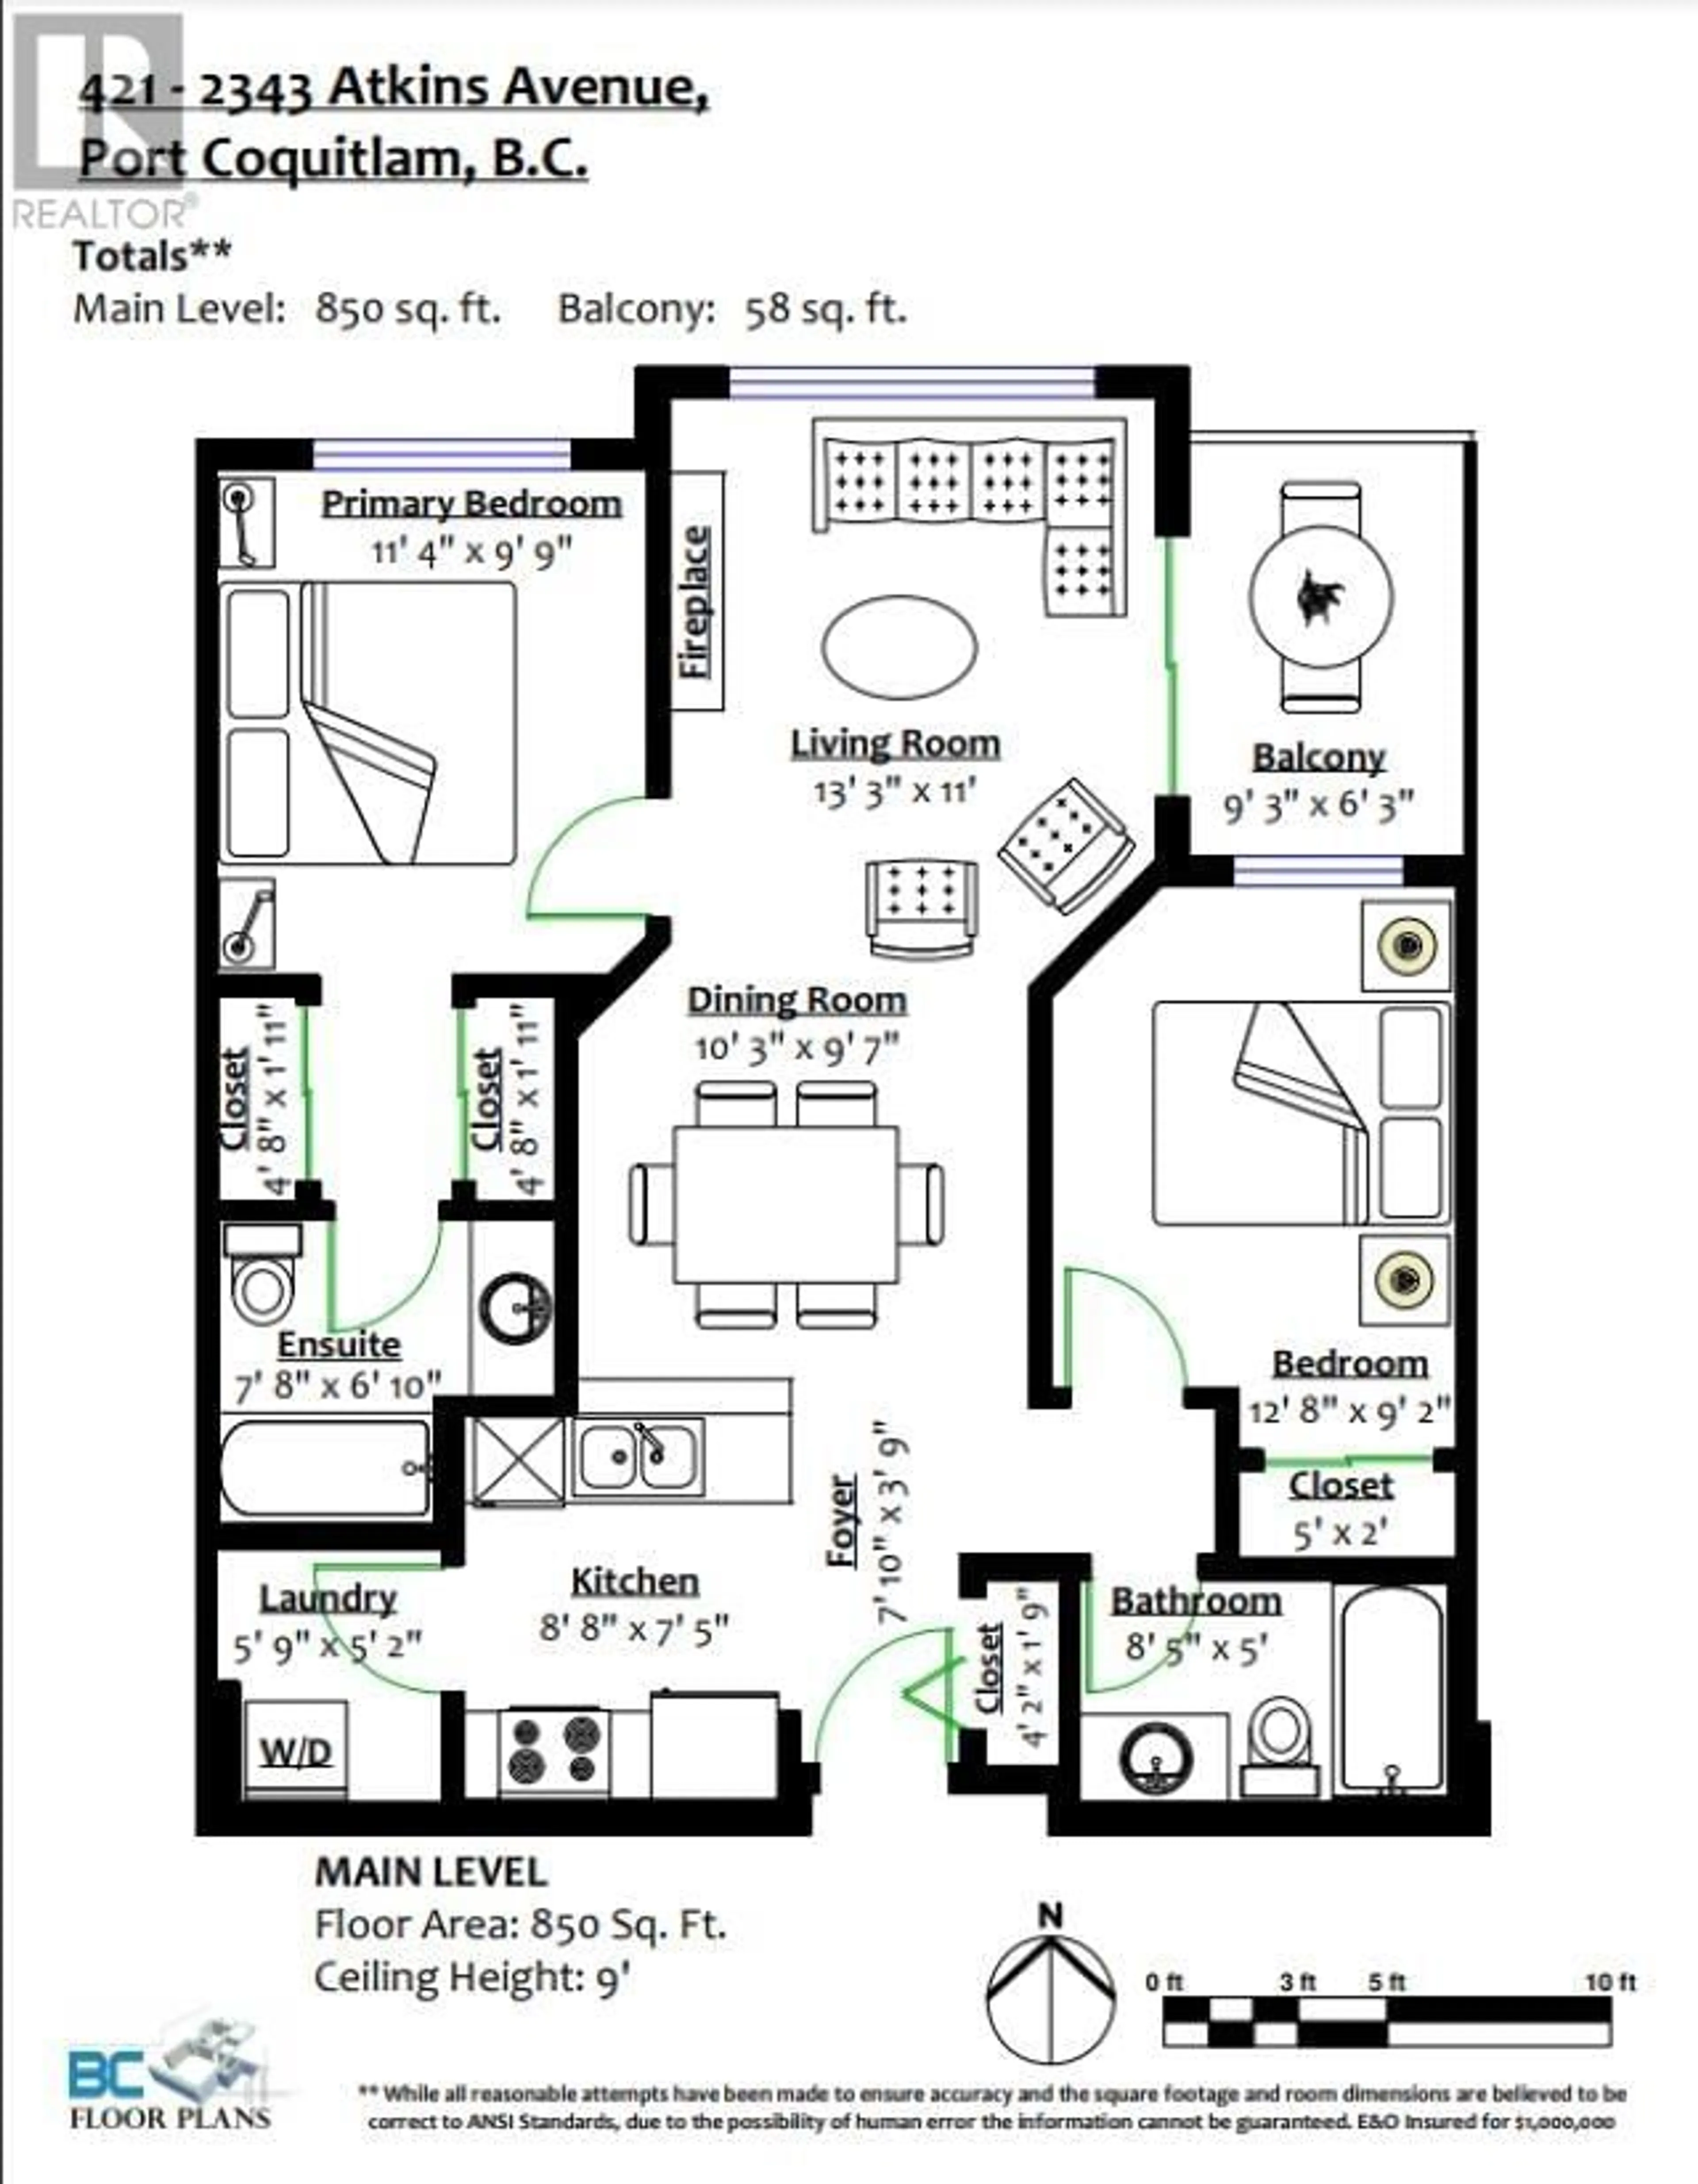 Floor plan for 421 2343 ATKINS AVENUE, Port Coquitlam British Columbia V3C1Y7